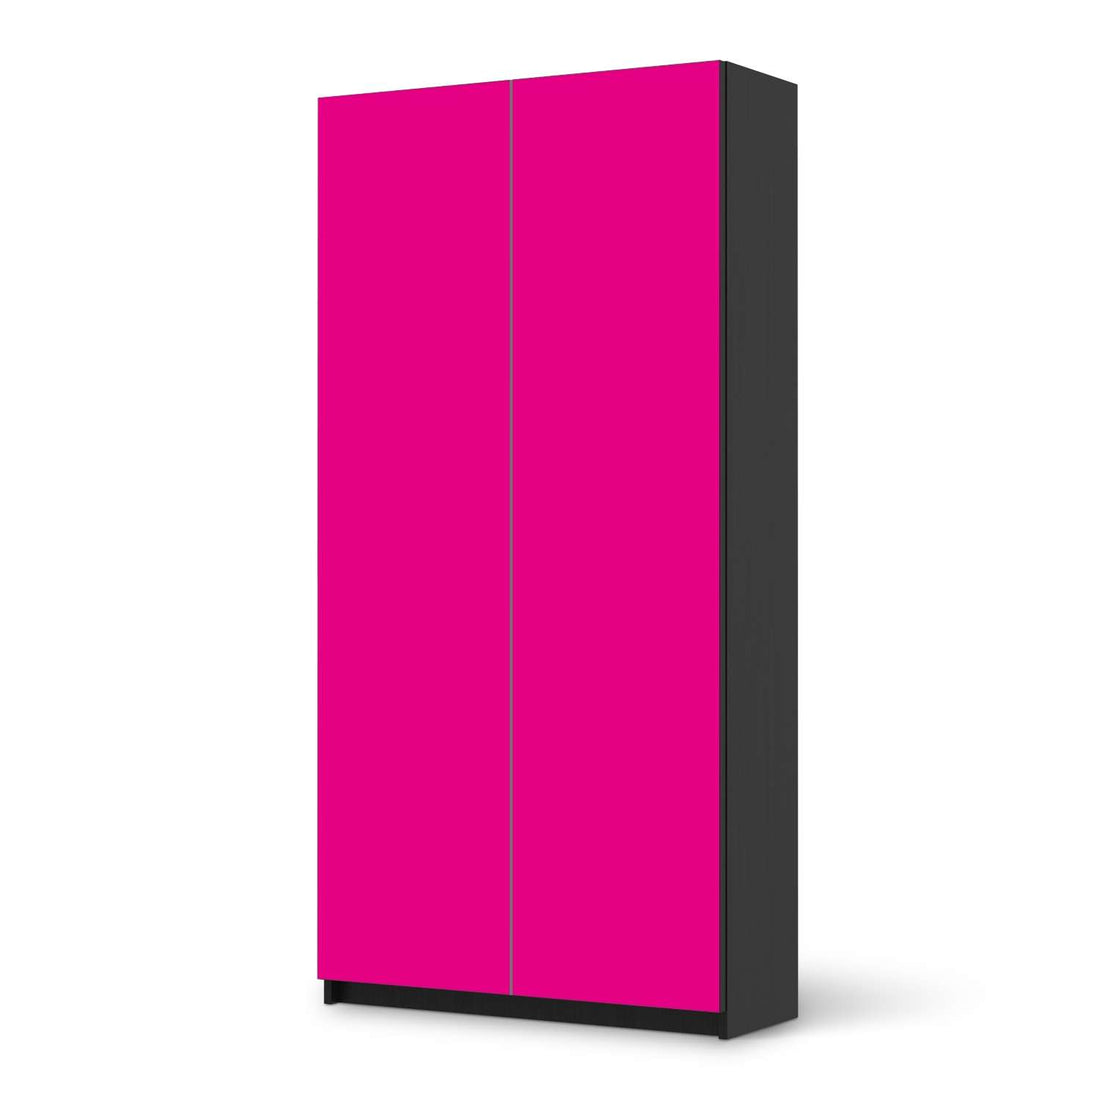 Klebefolie für Möbel Pink Dark - IKEA Pax Schrank 201 cm Höhe - 2 Türen - schwarz